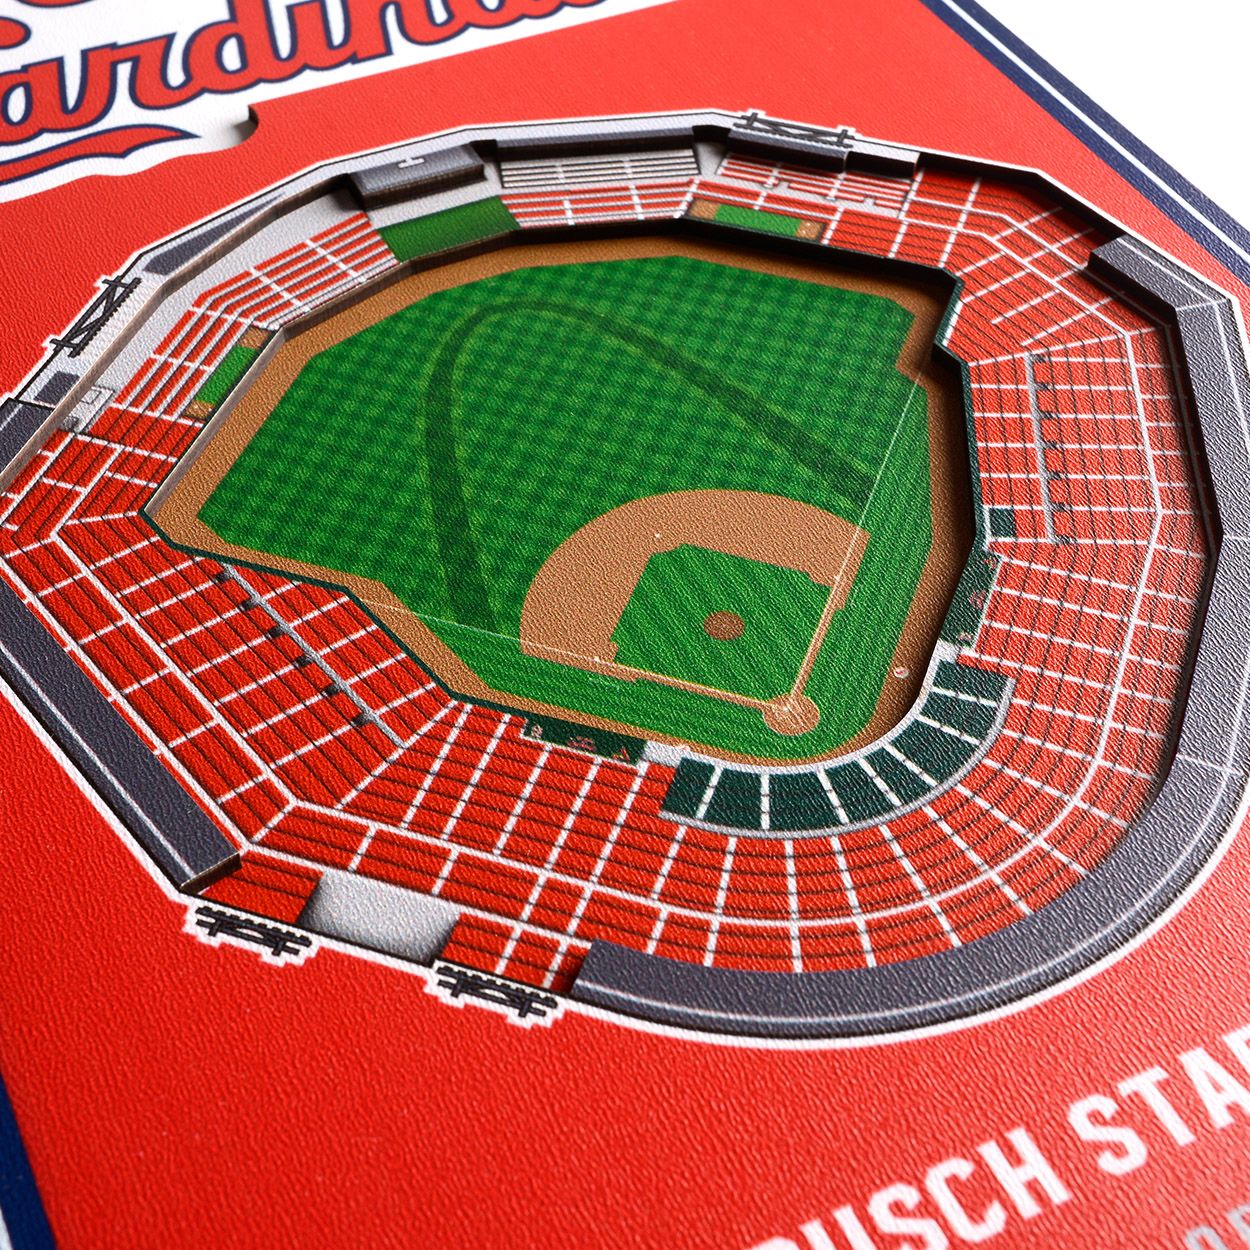 8 x 32 MLB St. Louis Cardinals 3D Stadium Banner